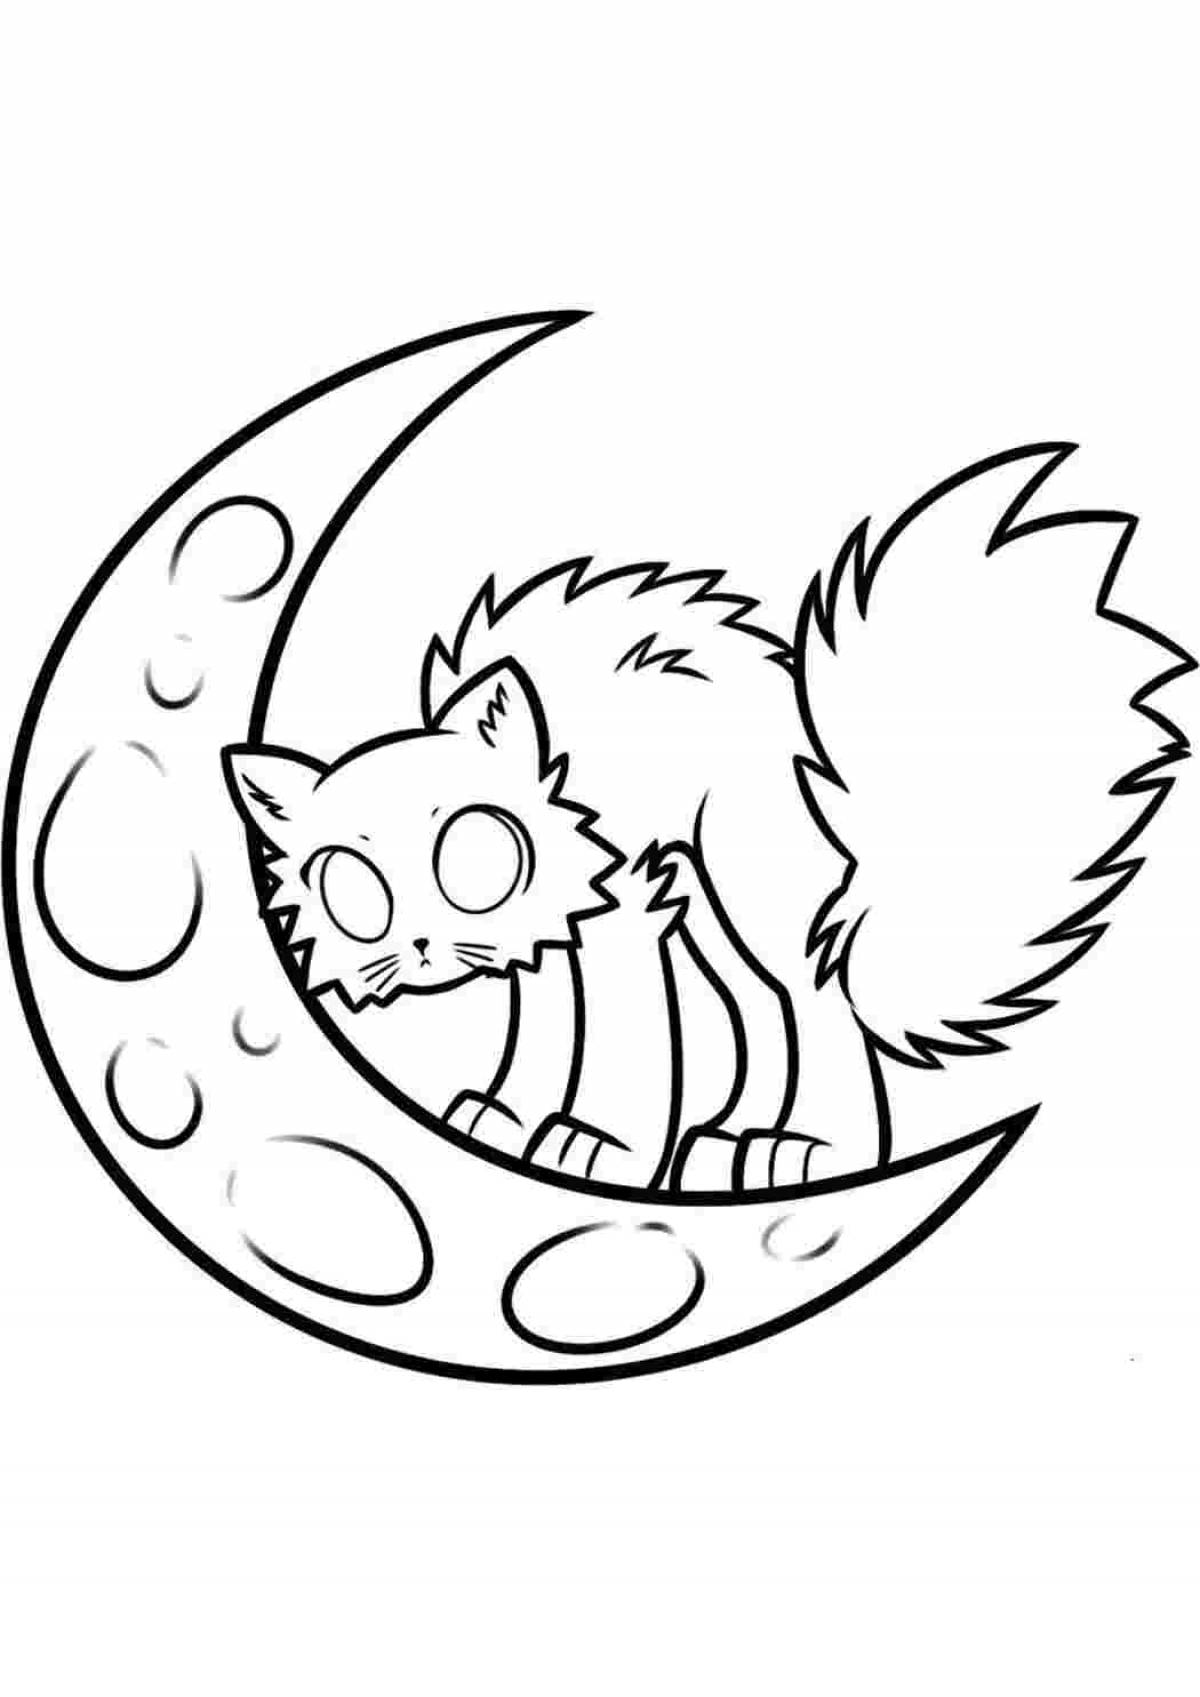 Rampant Lunar cat coloring book